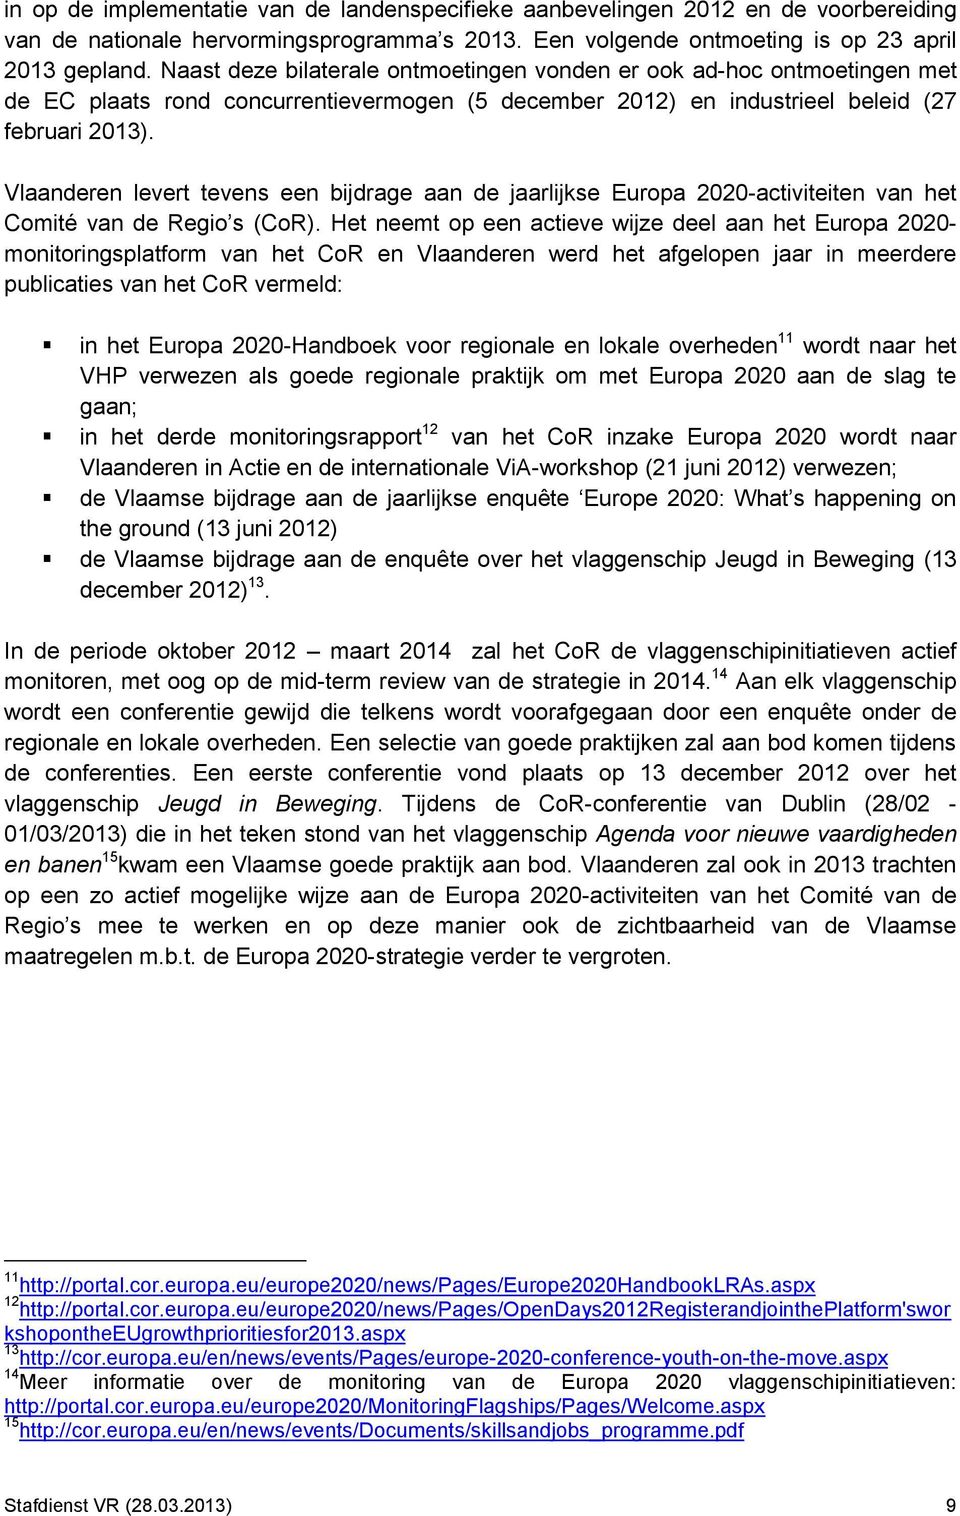 Vlaanderen levert tevens een bijdrage aan de jaarlijkse Europa 2020-activiteiten van het Comité van de Regio s (CoR).